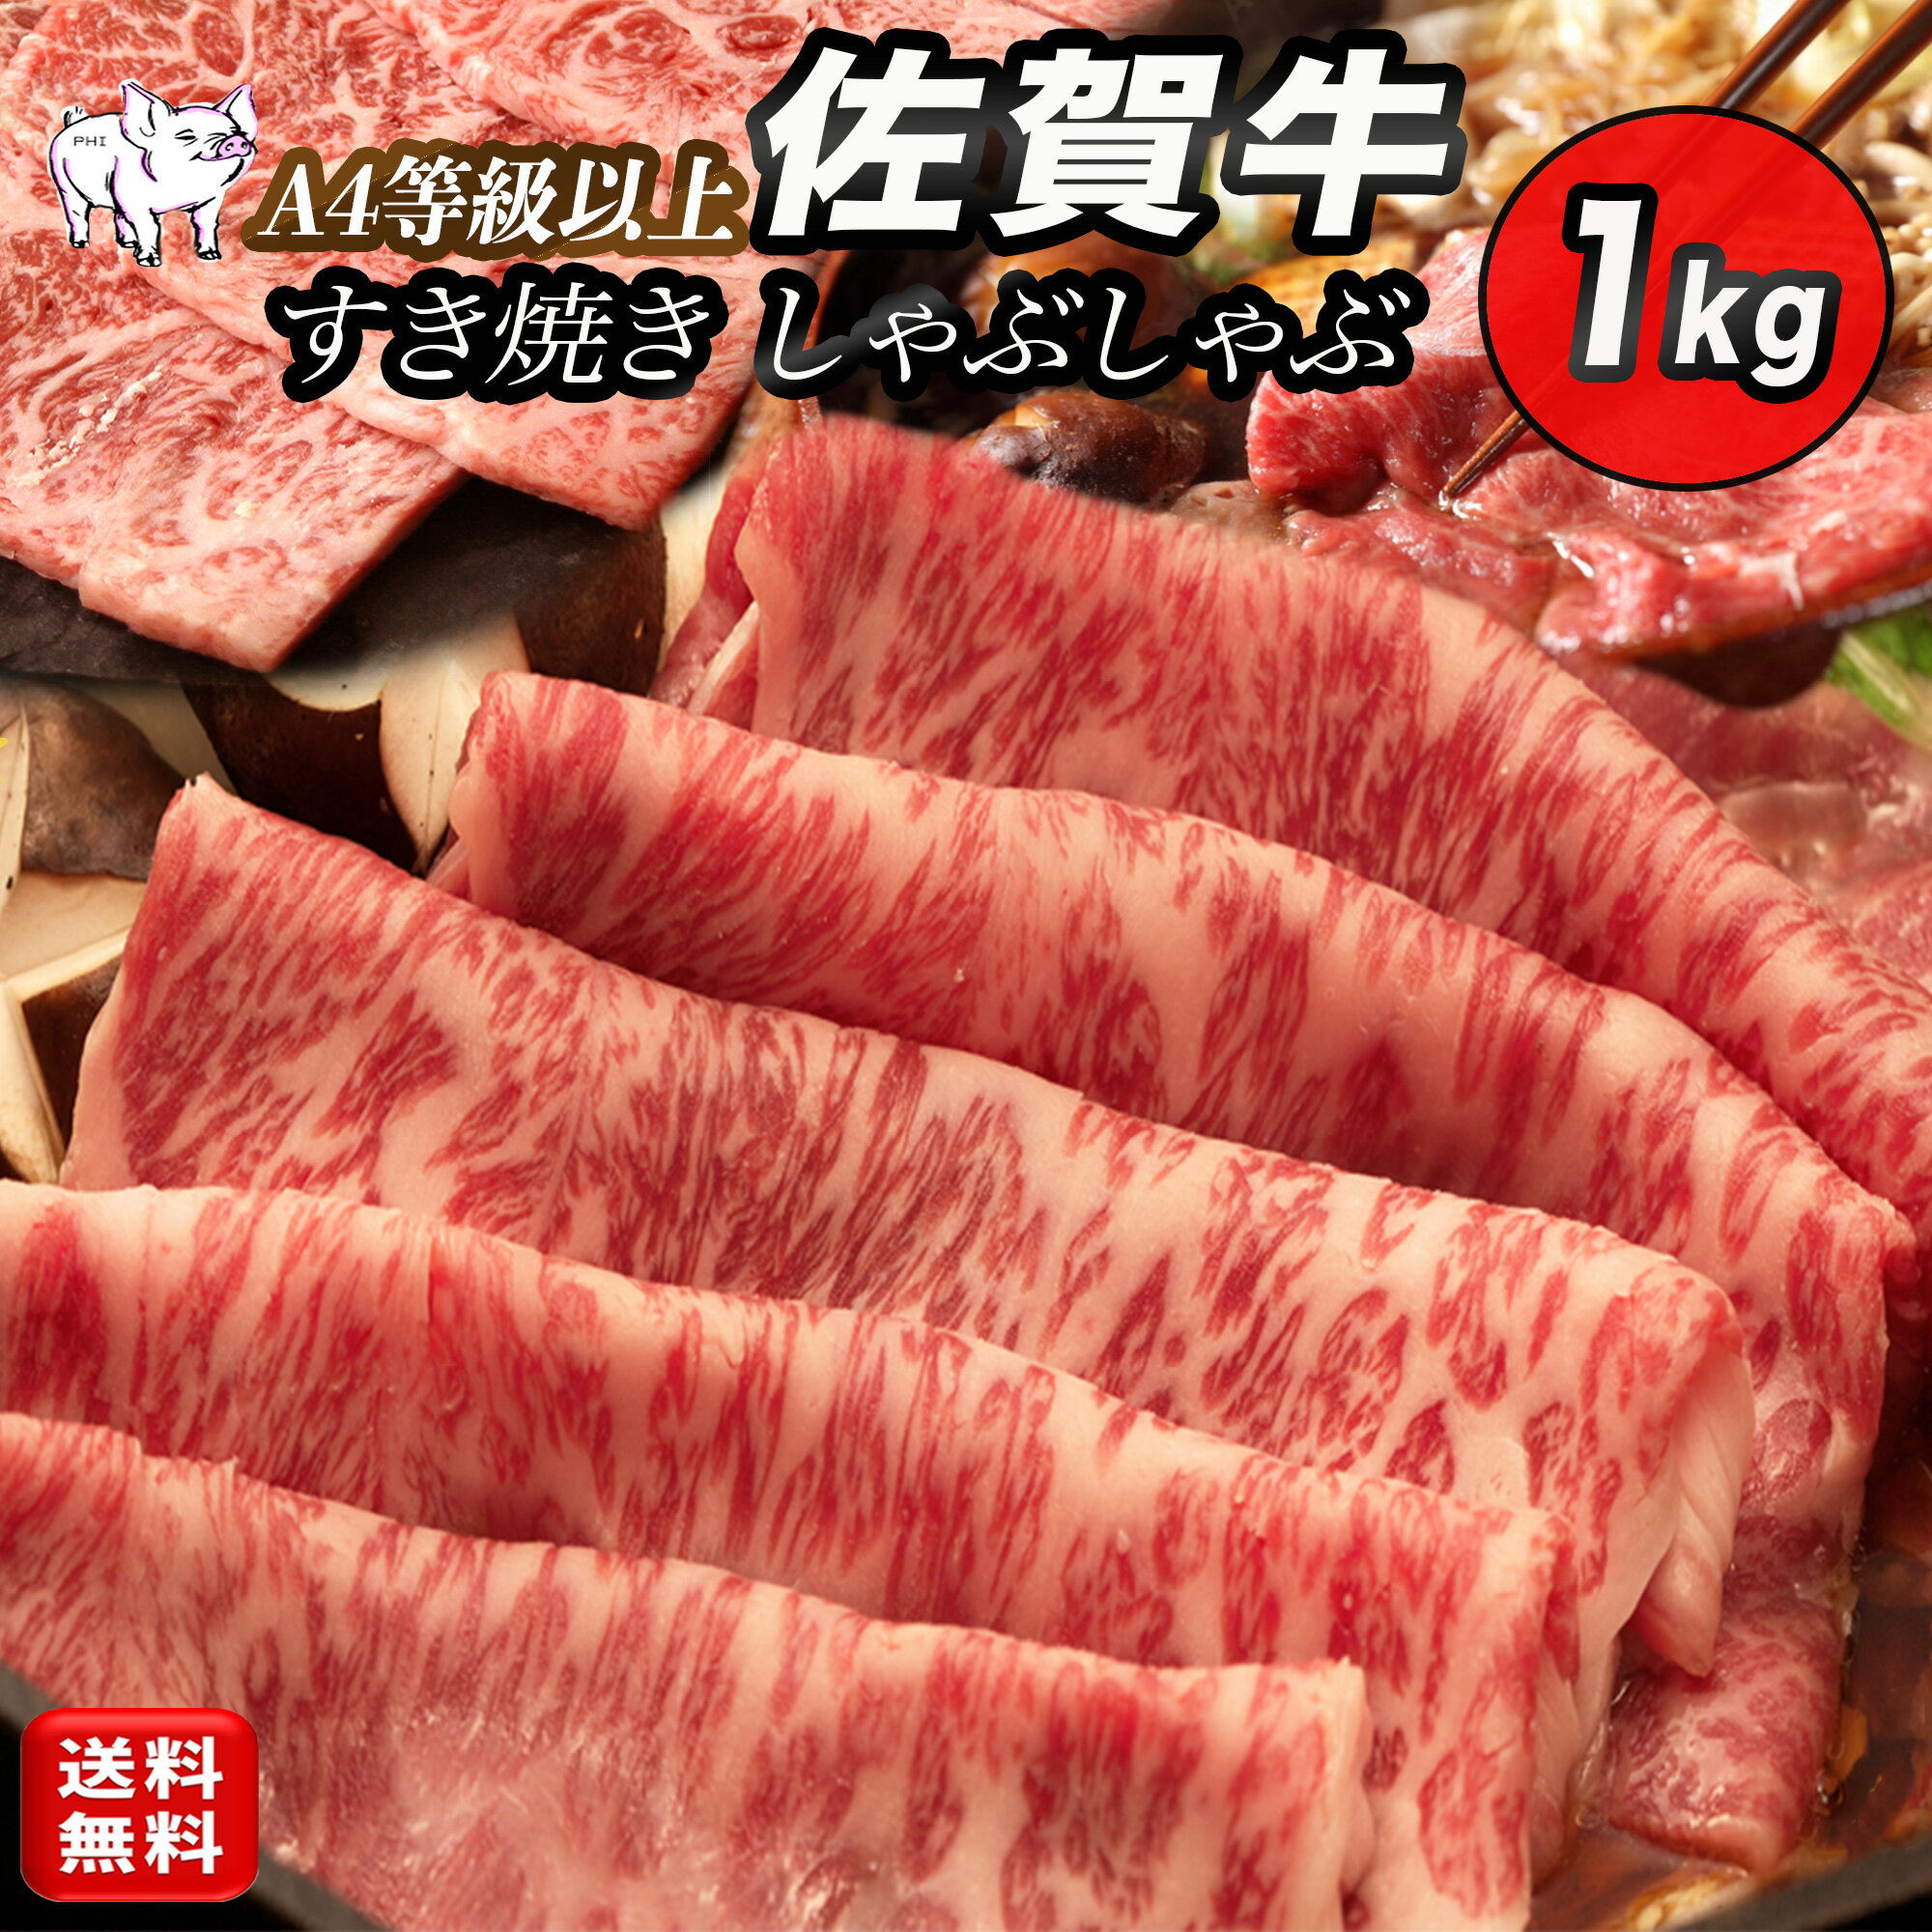 黒毛和牛 佐賀牛 すきやき しゃぶしゃぶ 肉 1kg (5~6人前) 牛肉 すき焼き 肉 ギフト